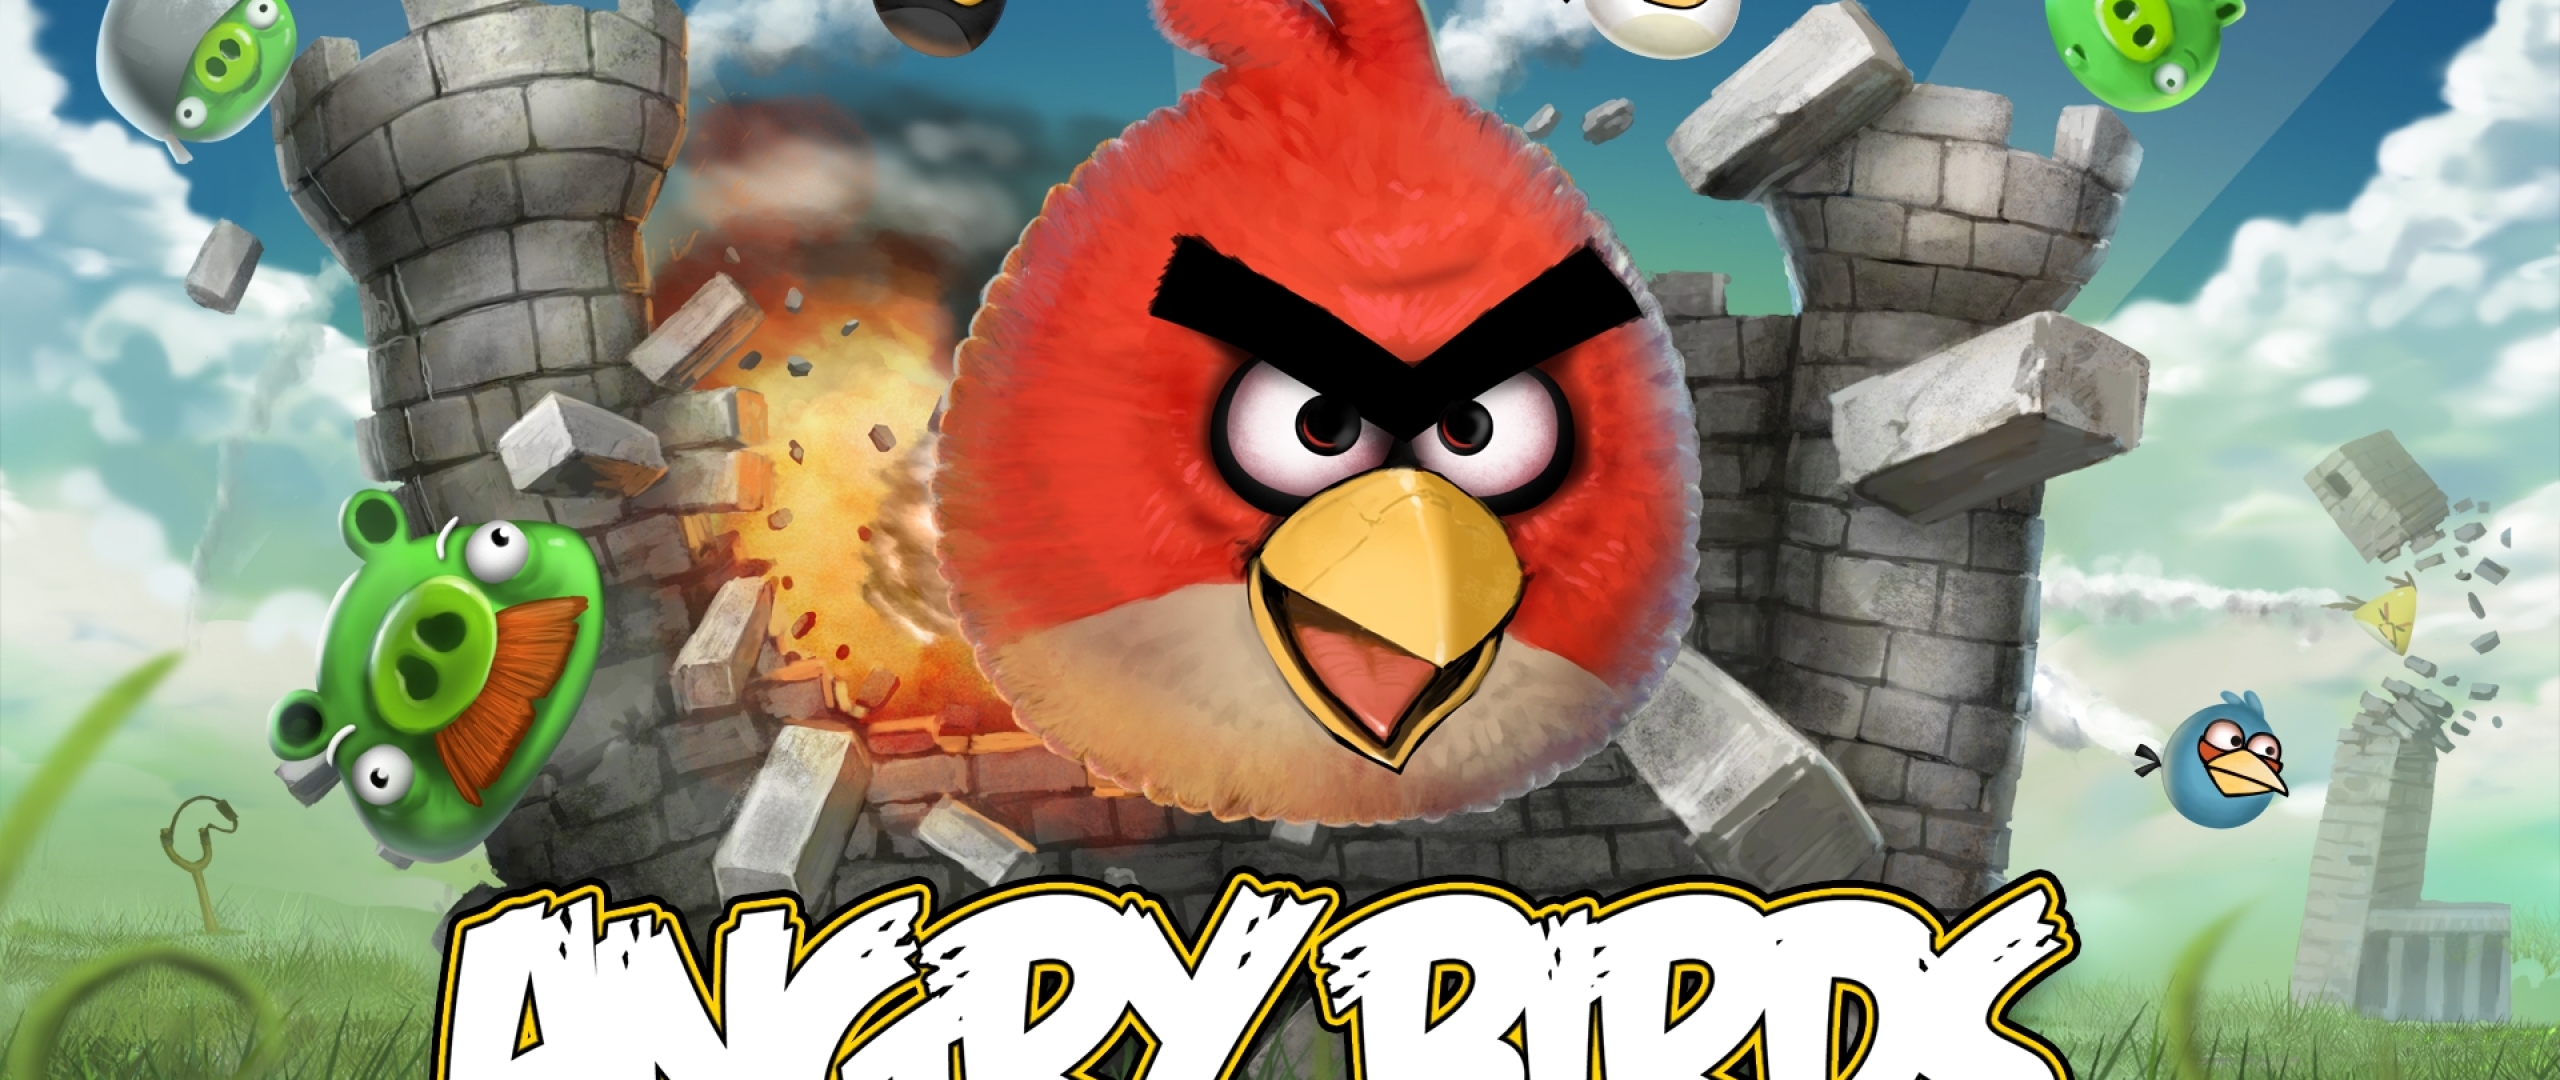 Angry Birds (игра). Angry Birds игры Rovio. Angry Birds версия 1.6.3. Энгри бердз игра первая версия.